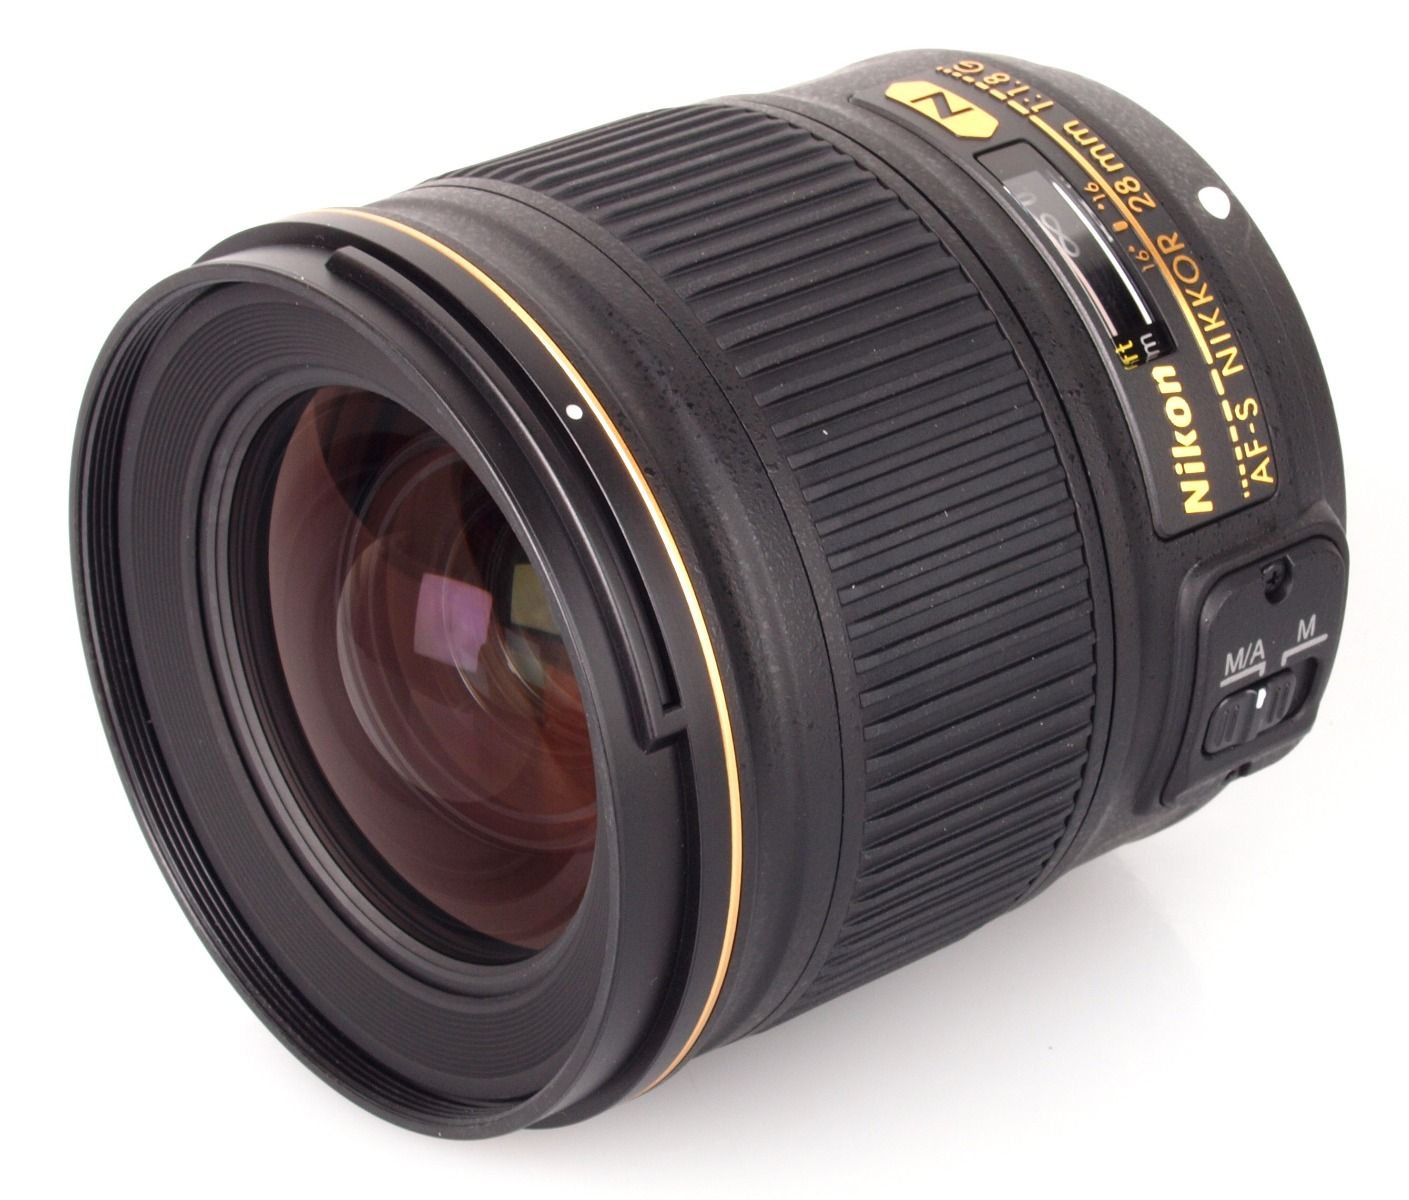 Nikon 28mm f1.8 G AF-S NIKKOR wide-angle prime Lens